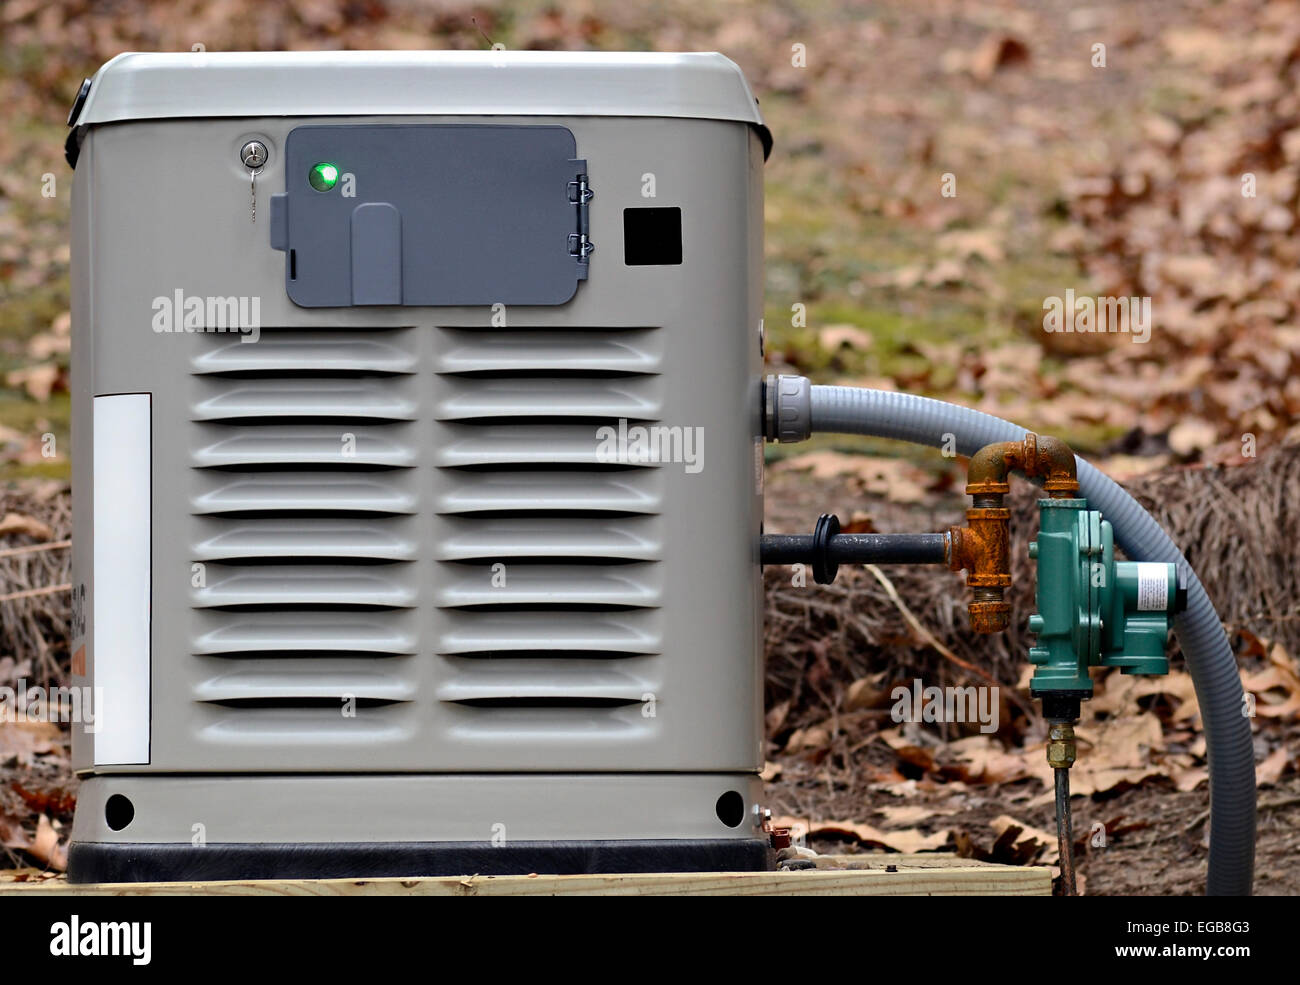 Ein Heim backup-Generator für den Einsatz bei Stromausfällen. Stockfoto